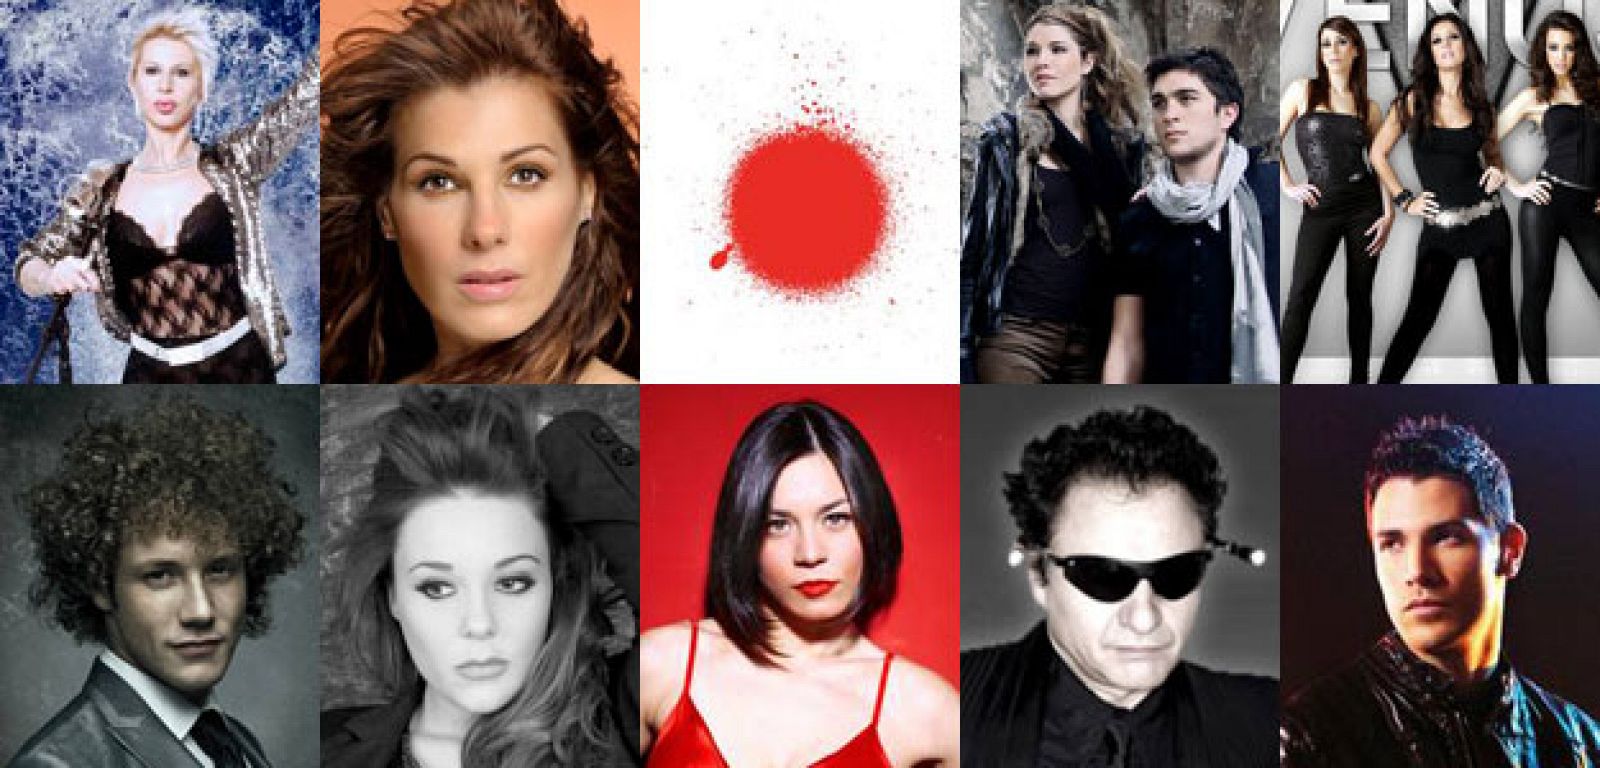 Los 10 candidatos más votados en el primer día de la preselección de Eurovisión 2010 de TVE.